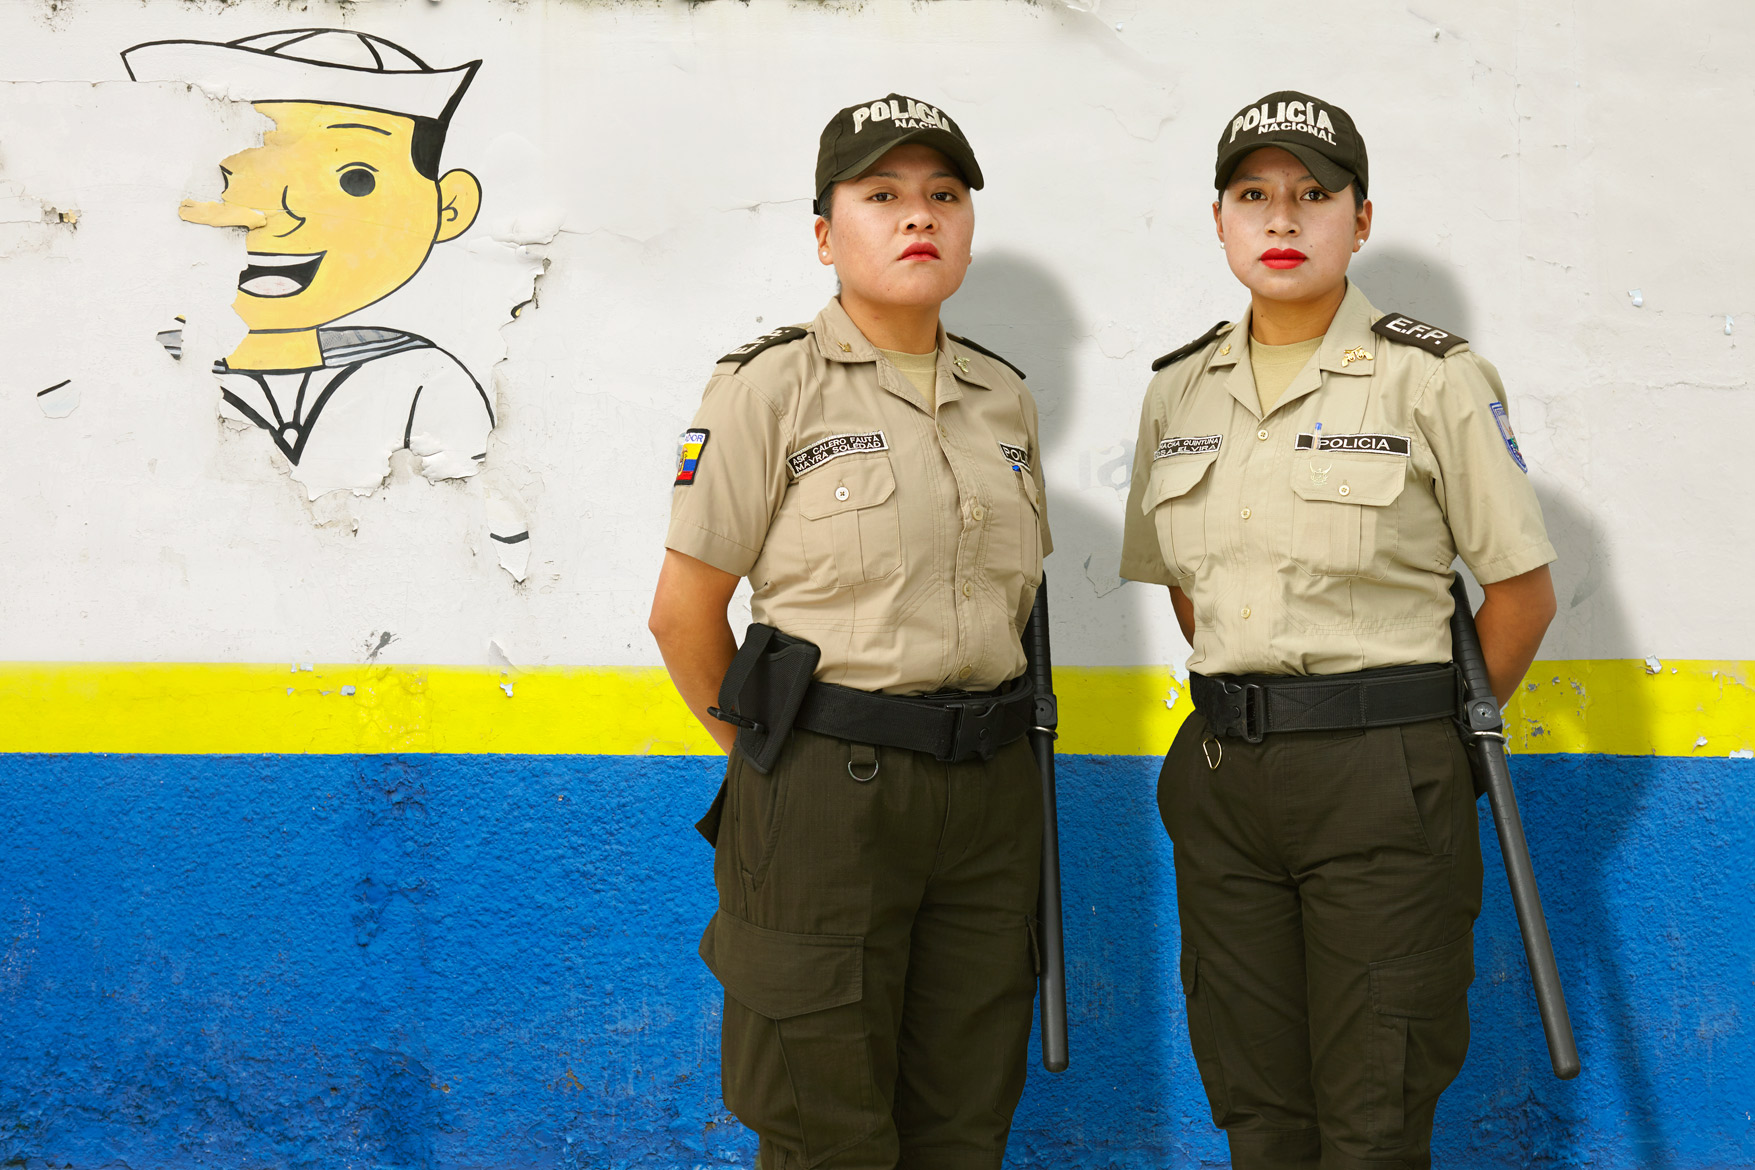   Police Women / Ecuador  